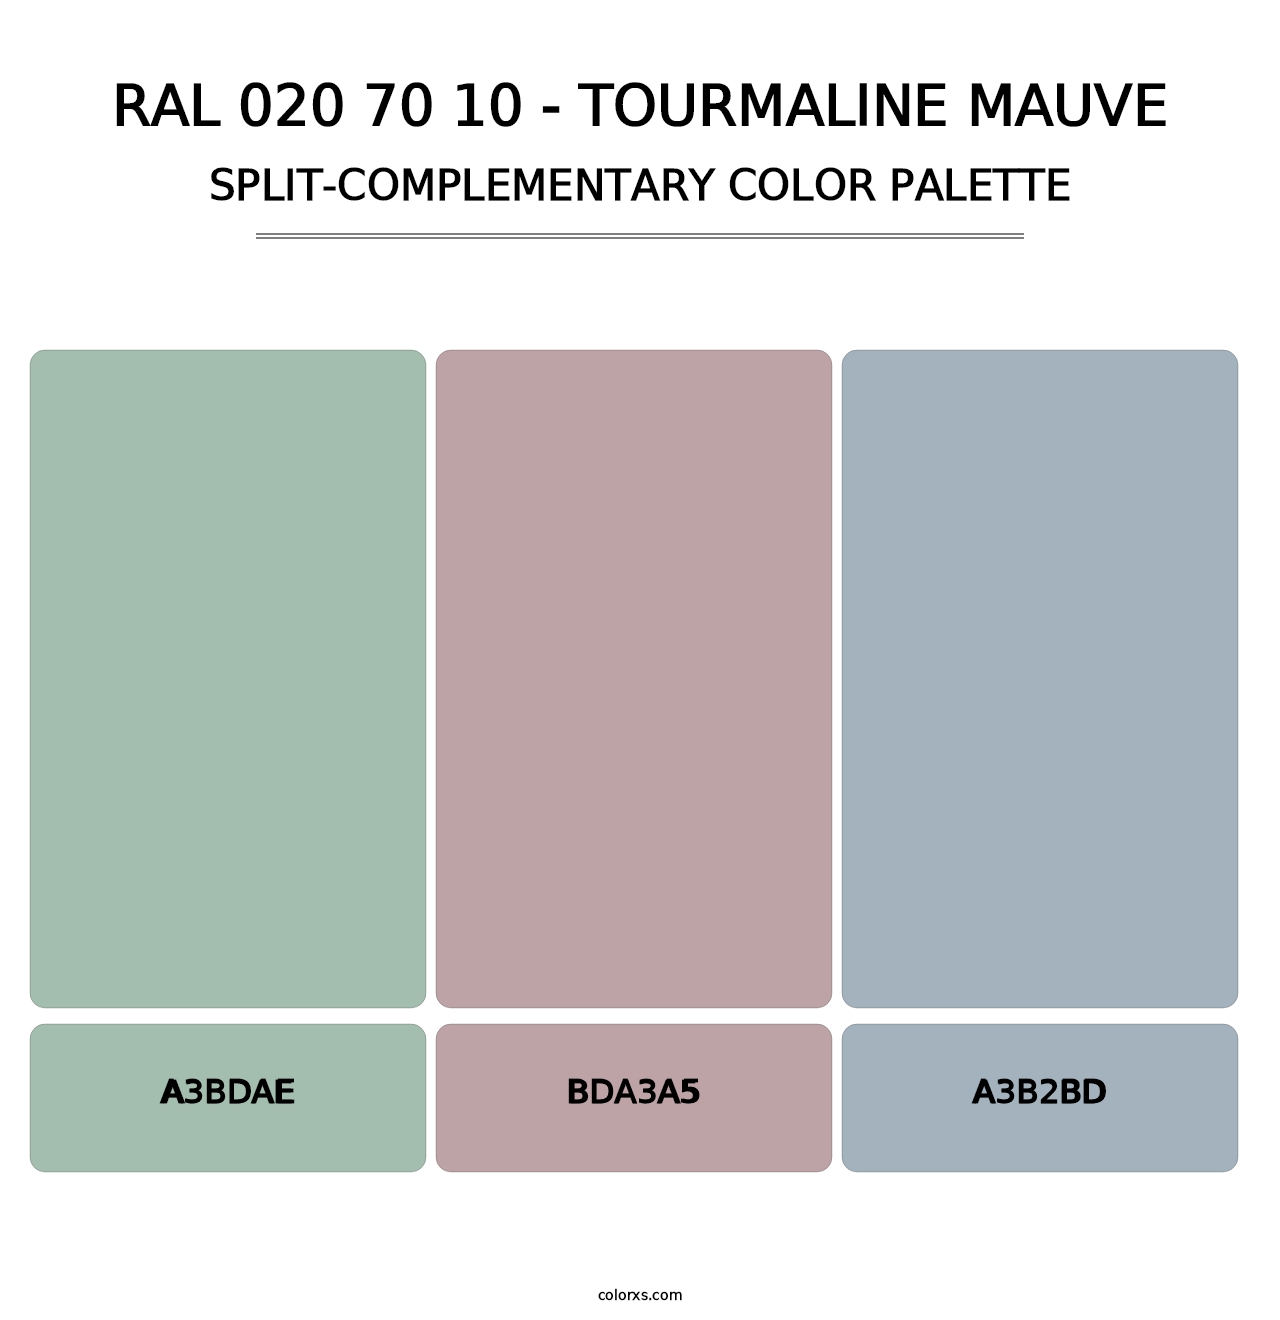 RAL 020 70 10 - Tourmaline Mauve - Split-Complementary Color Palette